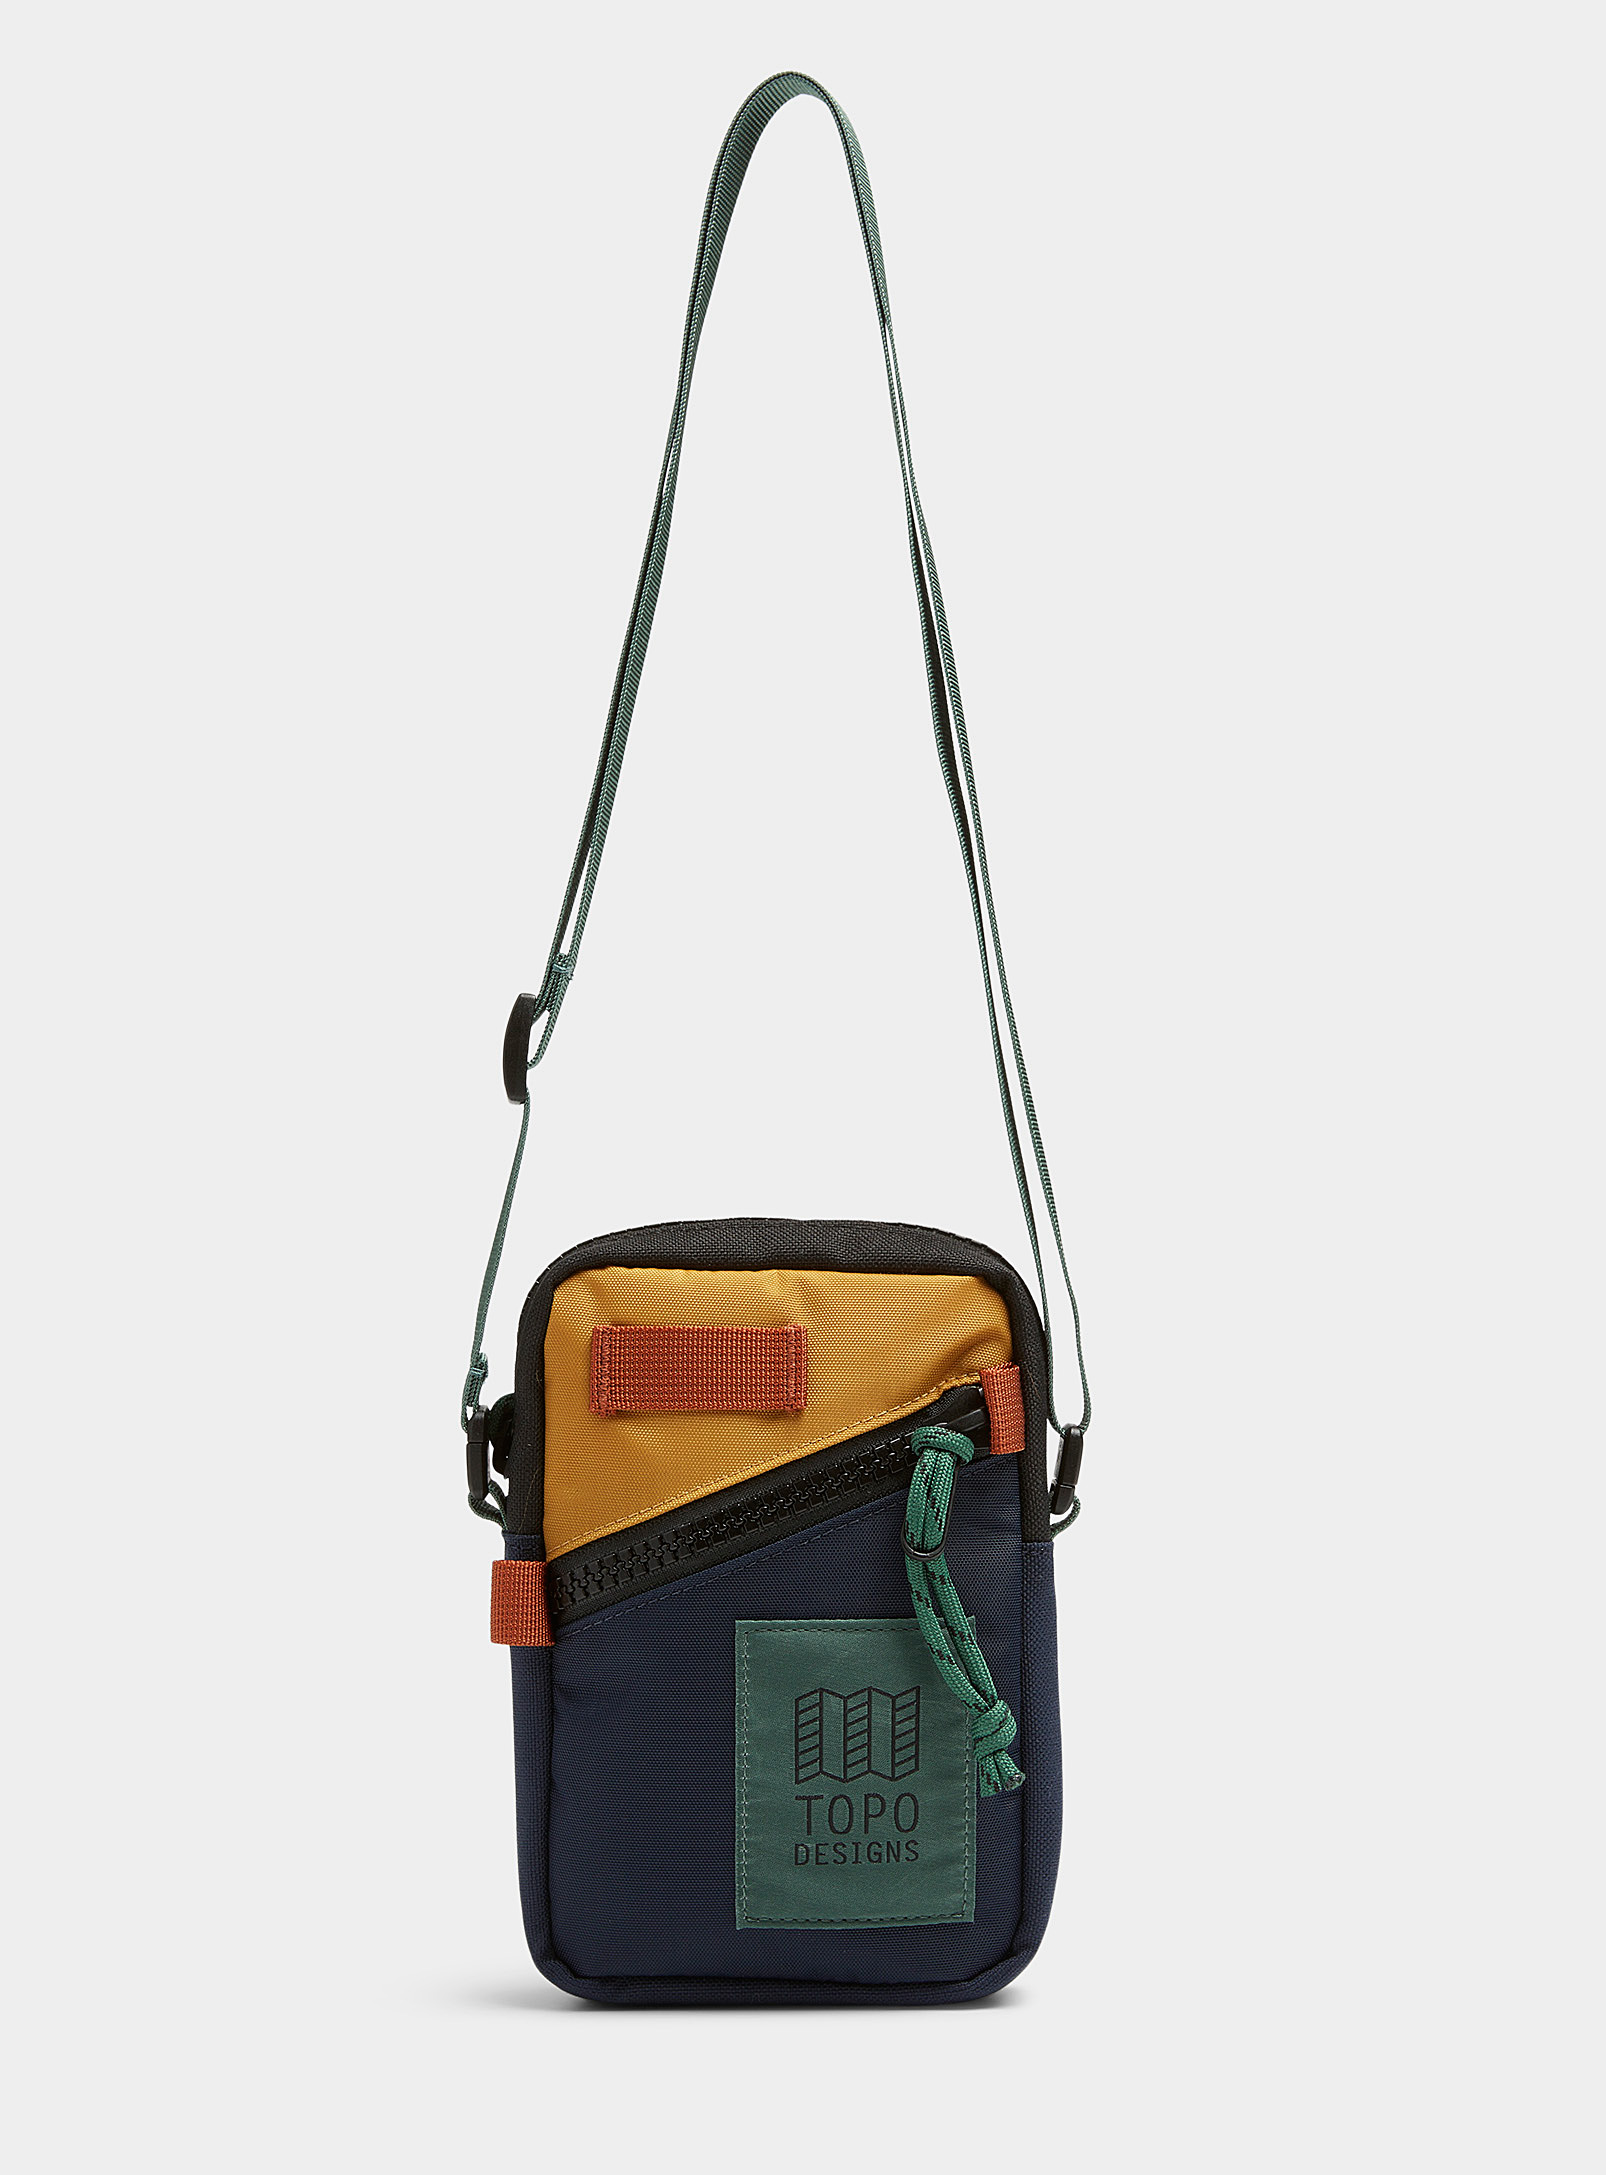 Topo Designs - Men's Mini shoulder bag